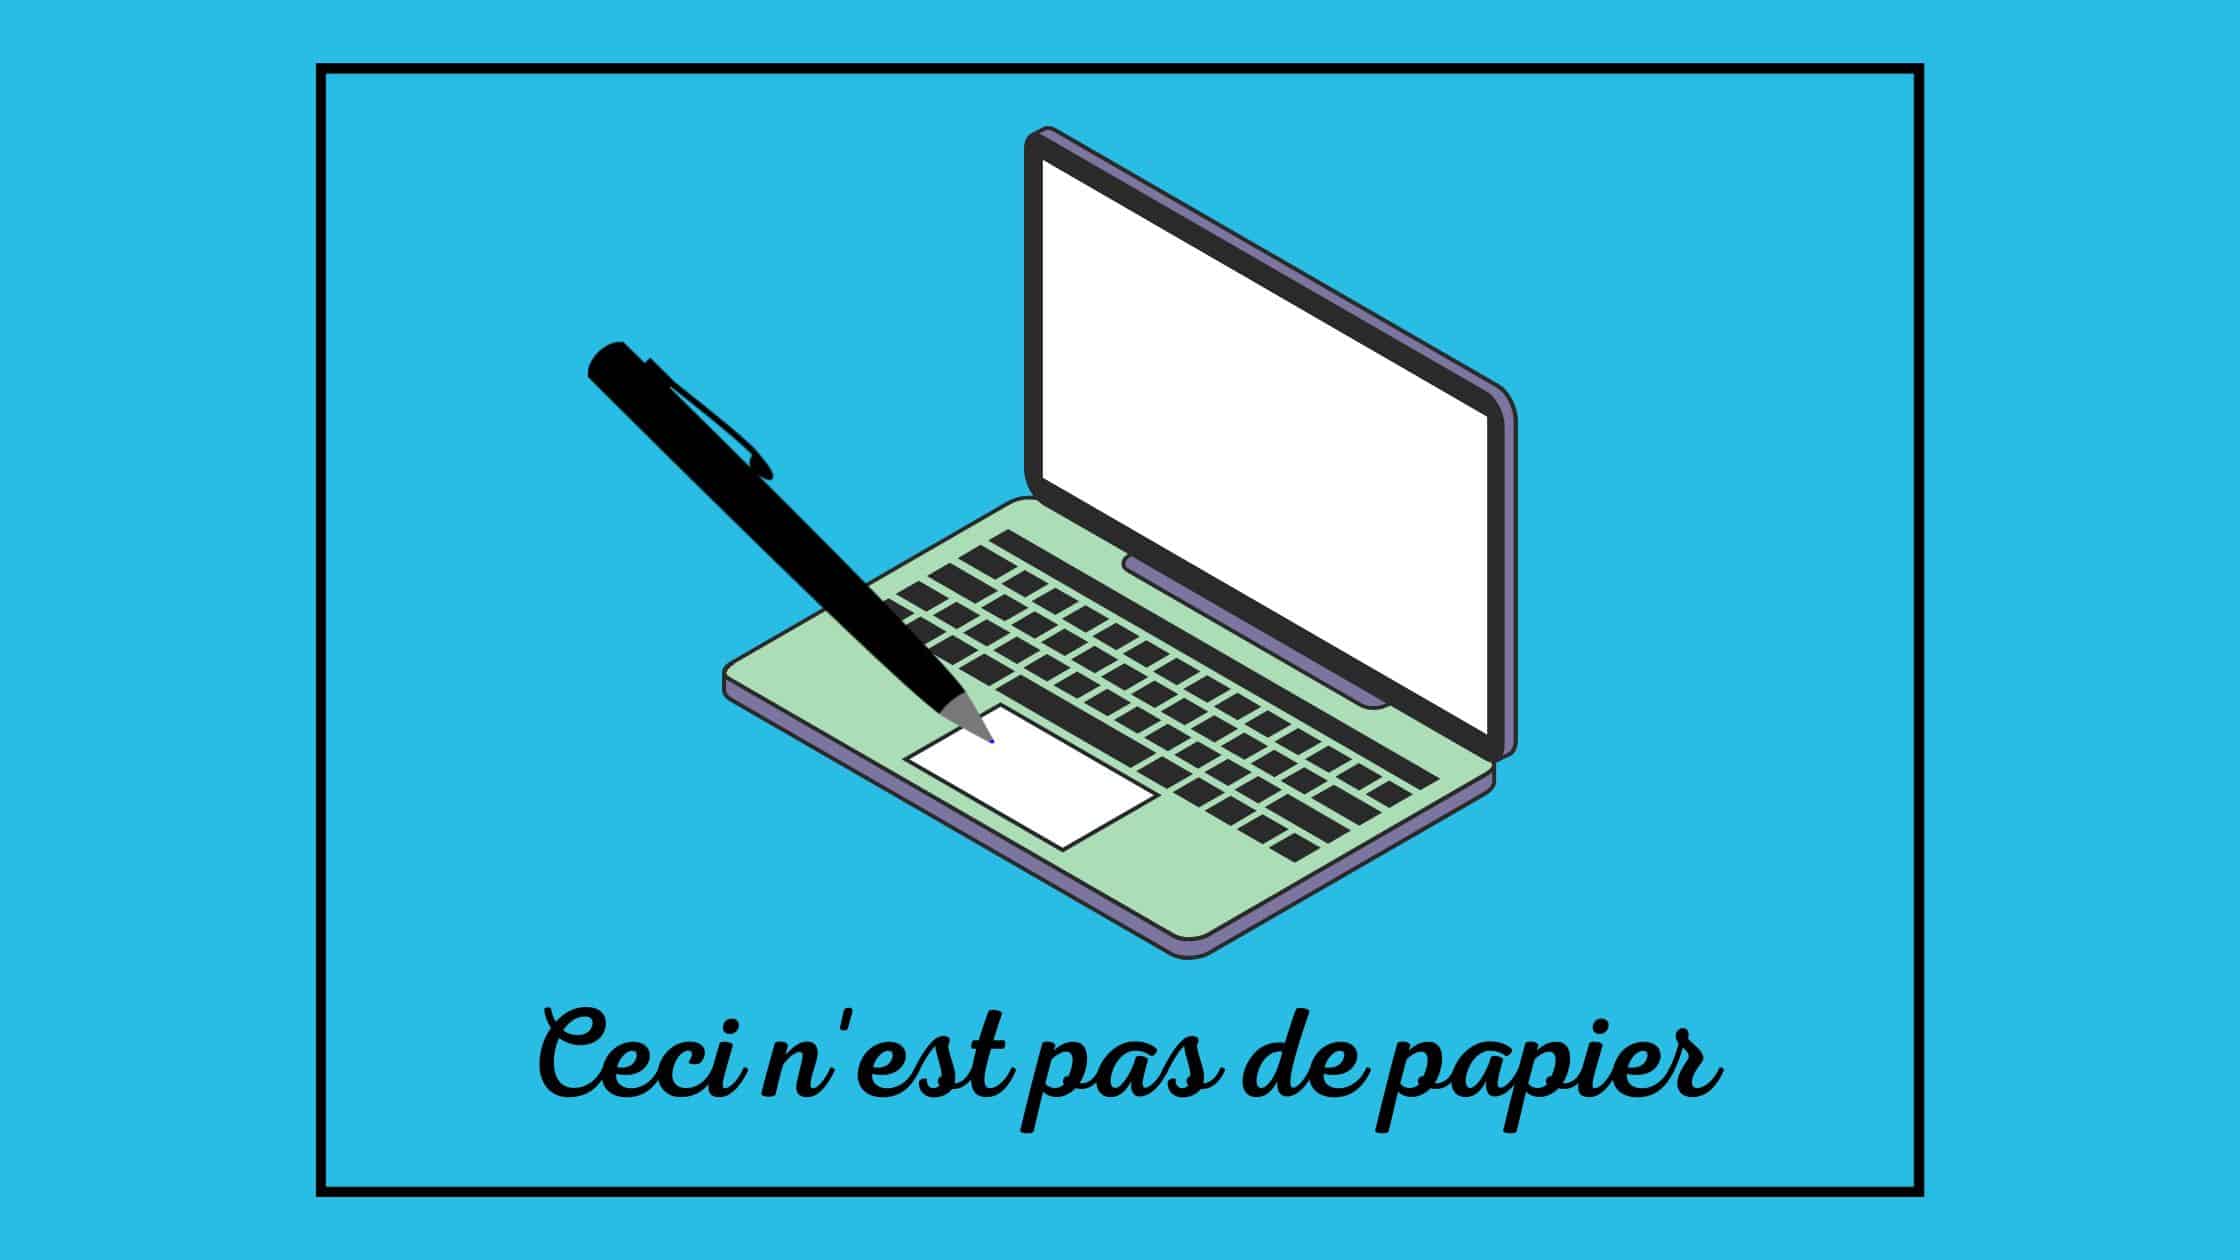 Blauwe achtergrond, zwart kader. Geanimeerde macbook met een geanimeerde pen die op het trackpad lijkt te schrijven. Onder de laptop de tekst 'Ceci n'est pas de papier.'